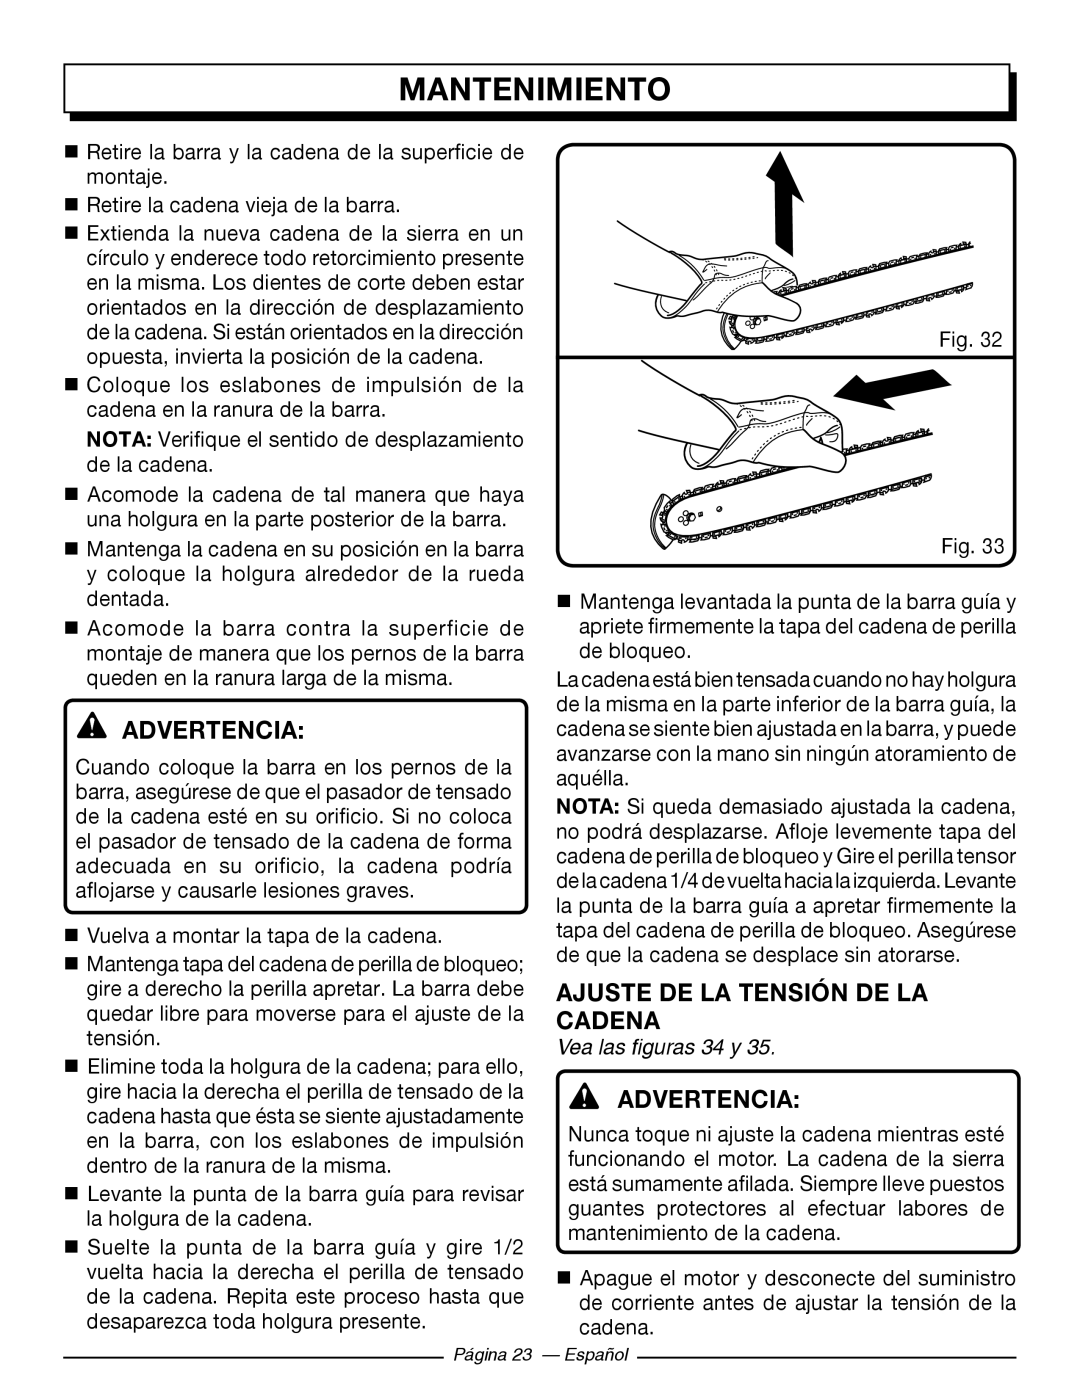 Homelite UT43102, UT43122 Ajuste De La Tensión De La Cadena, Mantenimiento, Advertencia, Vea las figuras 34 y 